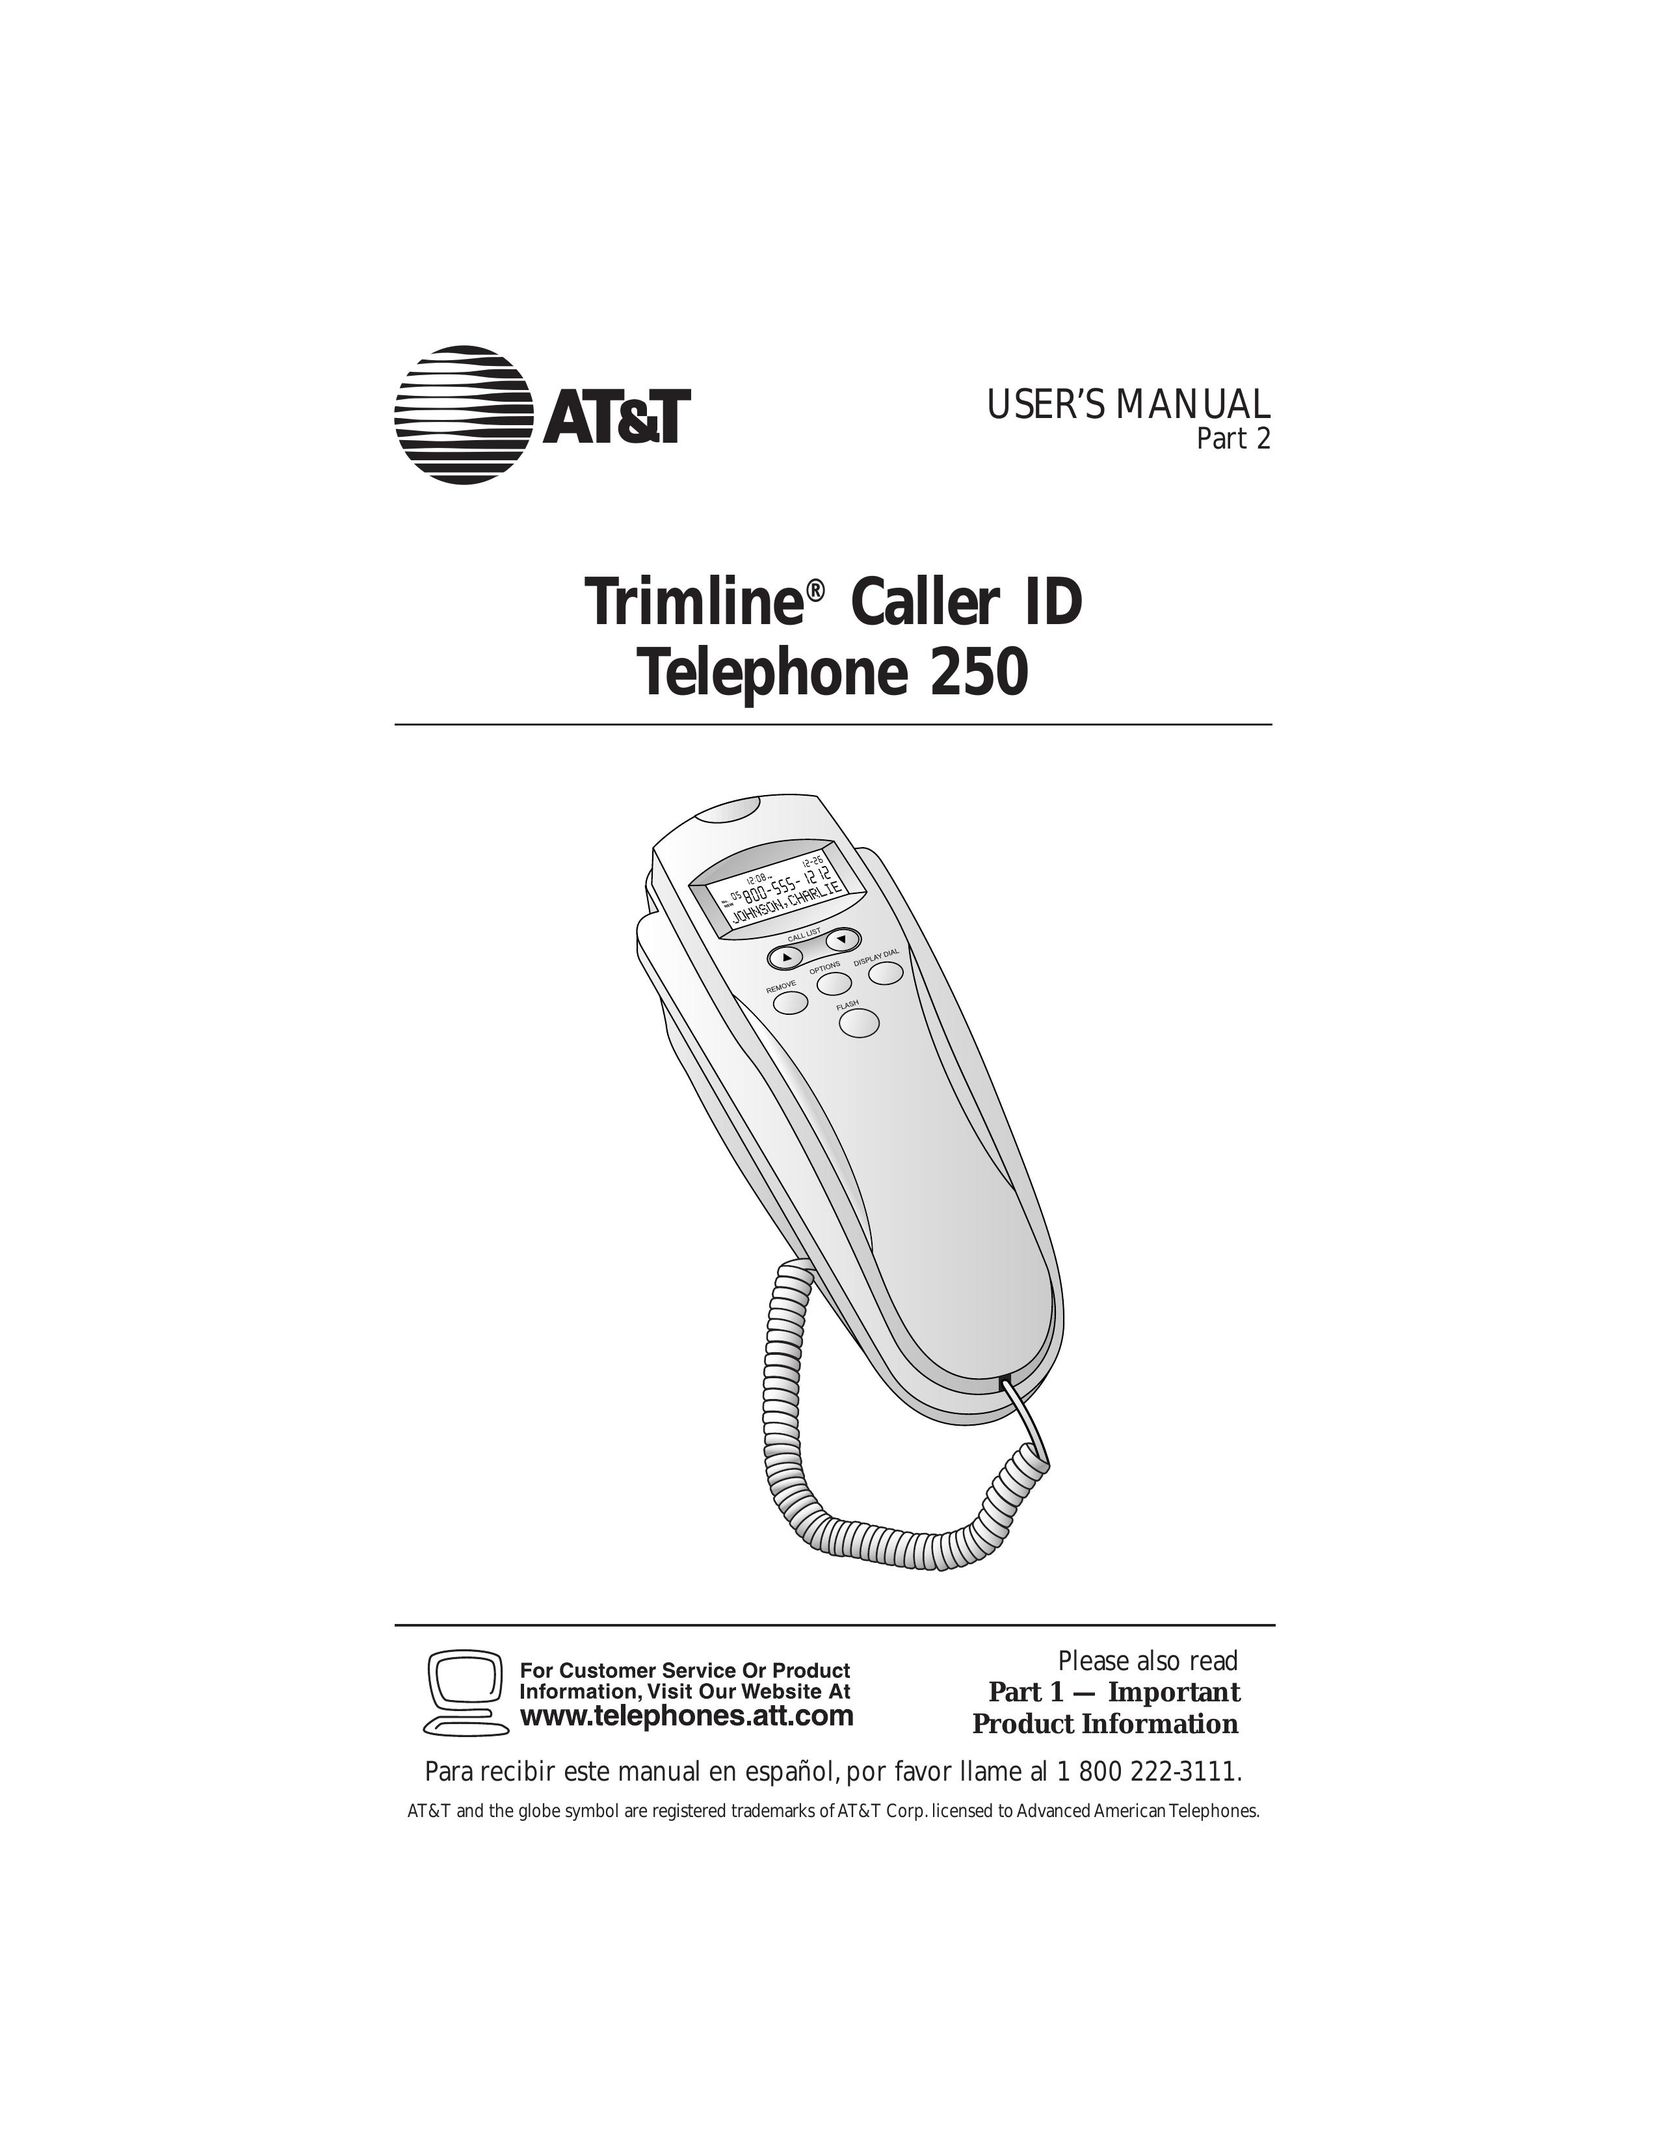 AT&T 250 Telephone User Manual